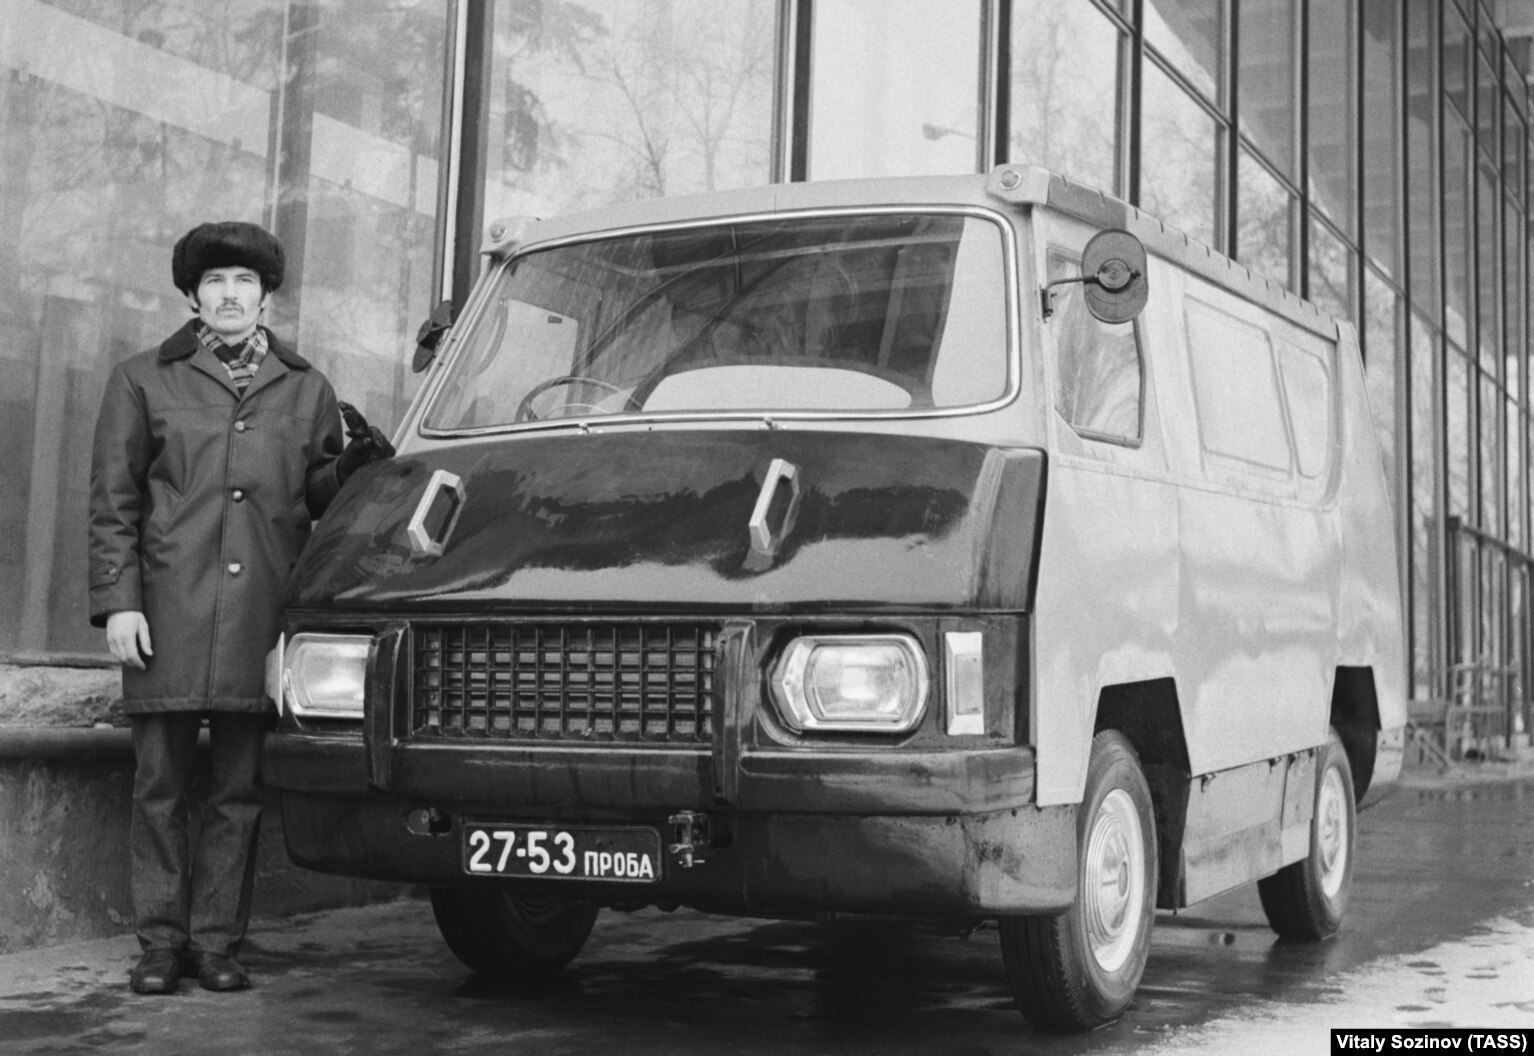 NIIAT-A923, një prototip furgoni elektrik i prodhimit sovjetik i fotografuar më 1974. Dizajni përfundoi me peshë të madhe dhe me të meta teknike që ishin të vështira për t'u kapërcyer me teknologjinë e baterive të asaj kohe. ​